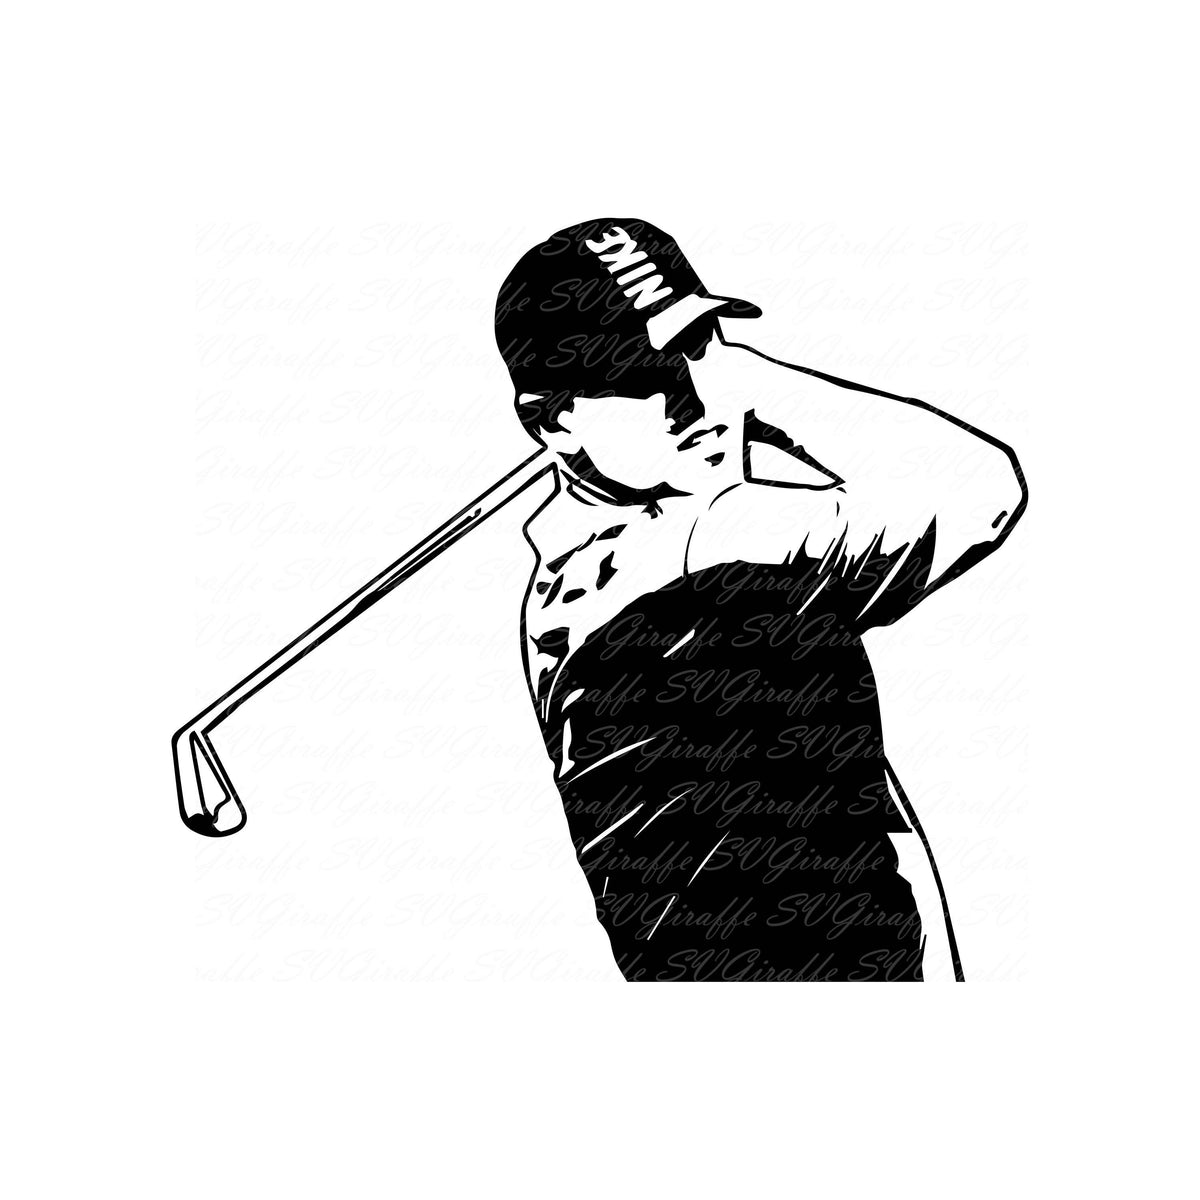 Download Brooks Koepka Golfer SVG DXF PNG pdf jpg eps files | Golf ...